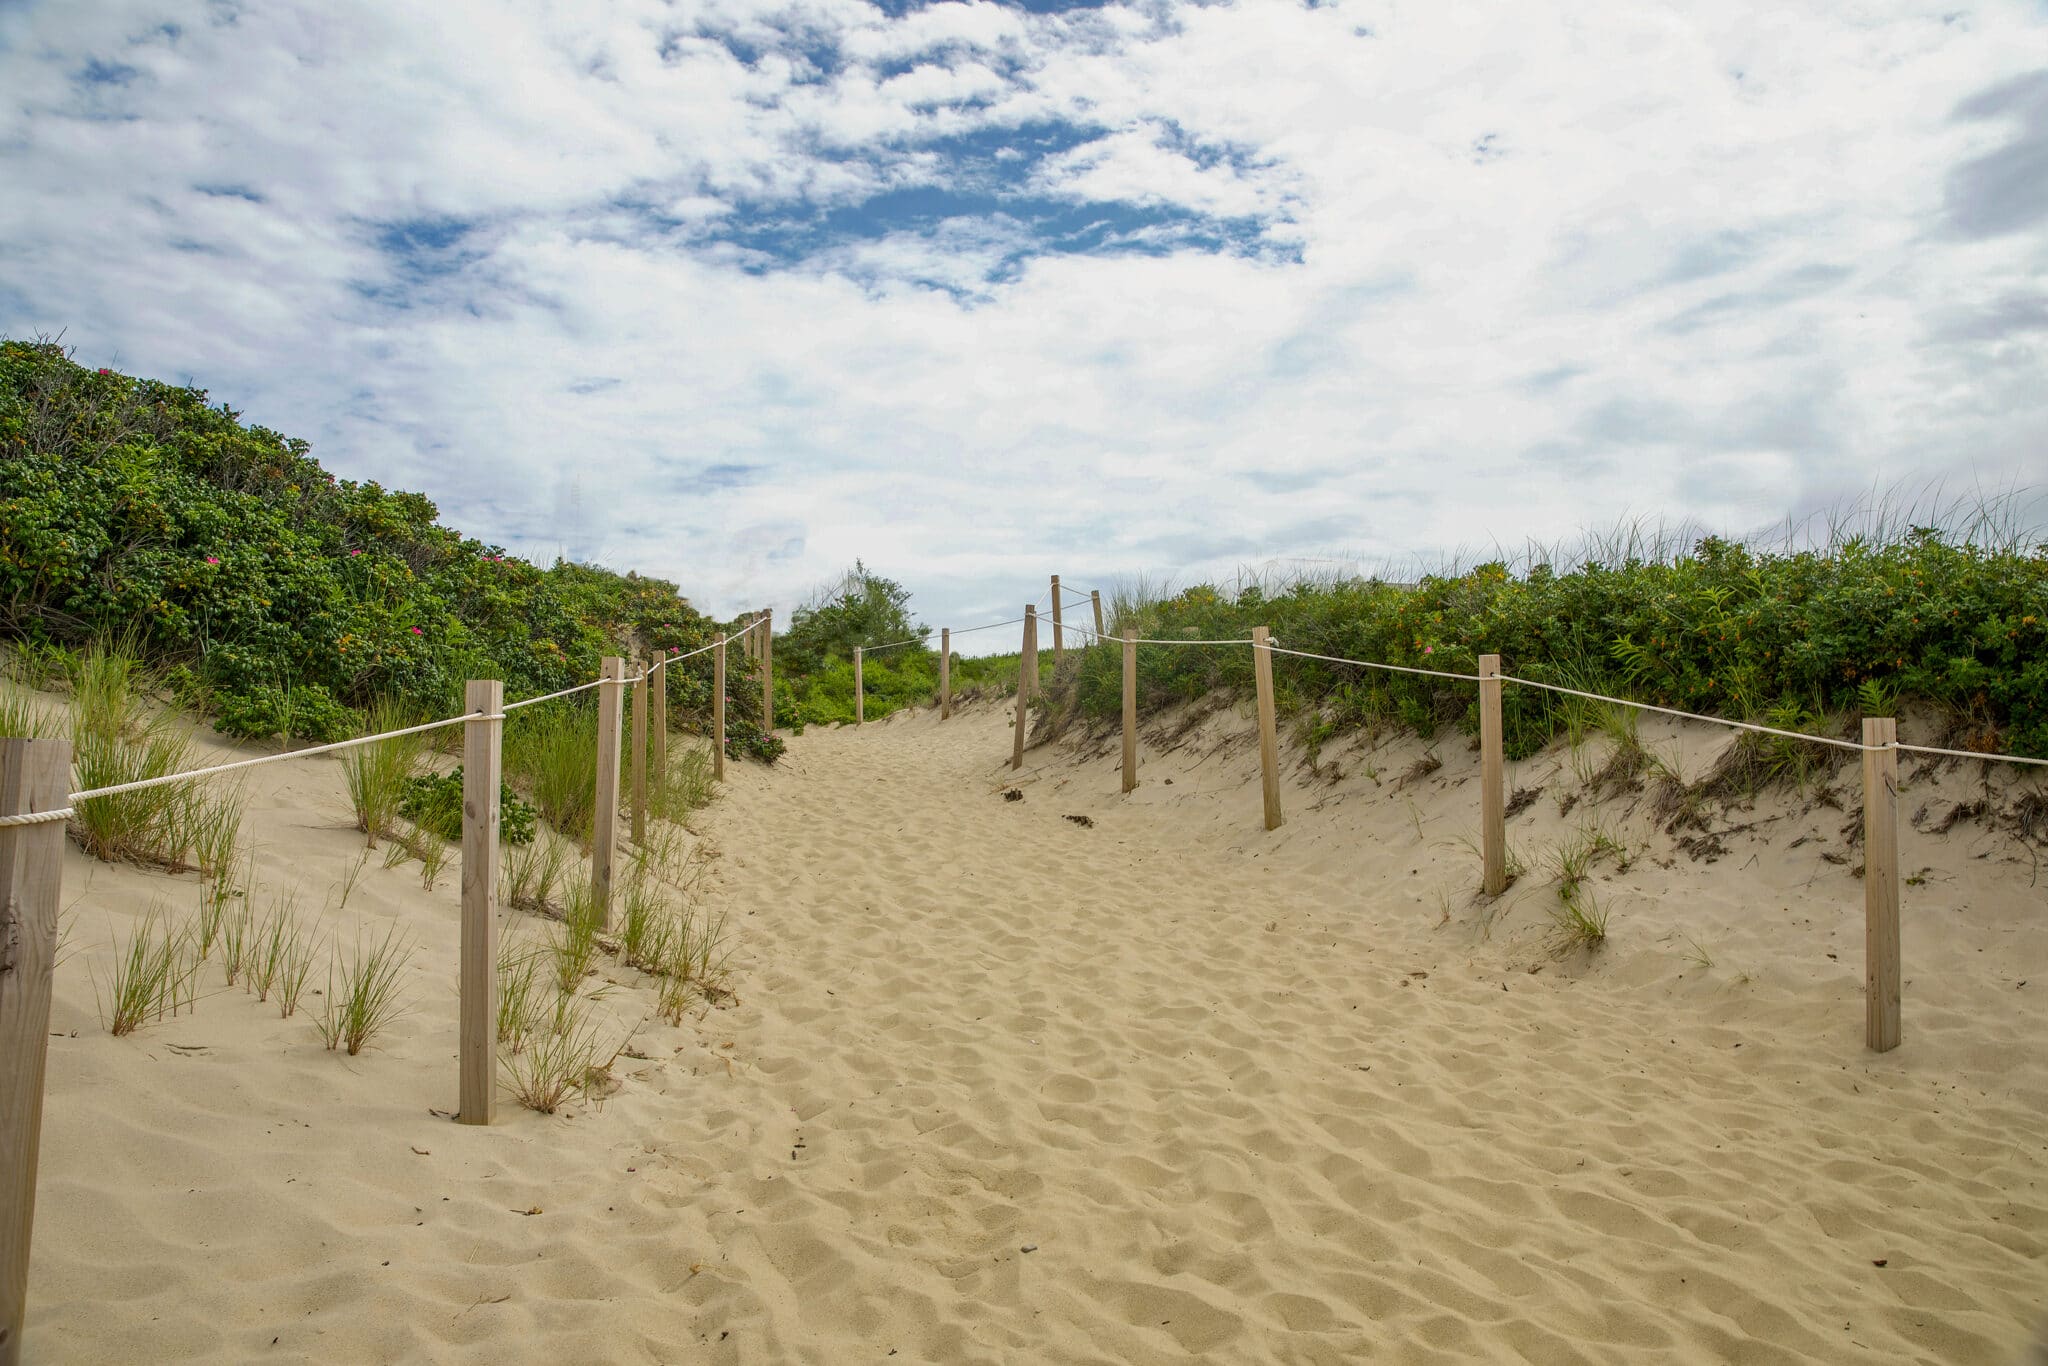 A Nantucket Beach Guide: 7 Stunning Coastal Spots to Enjoy